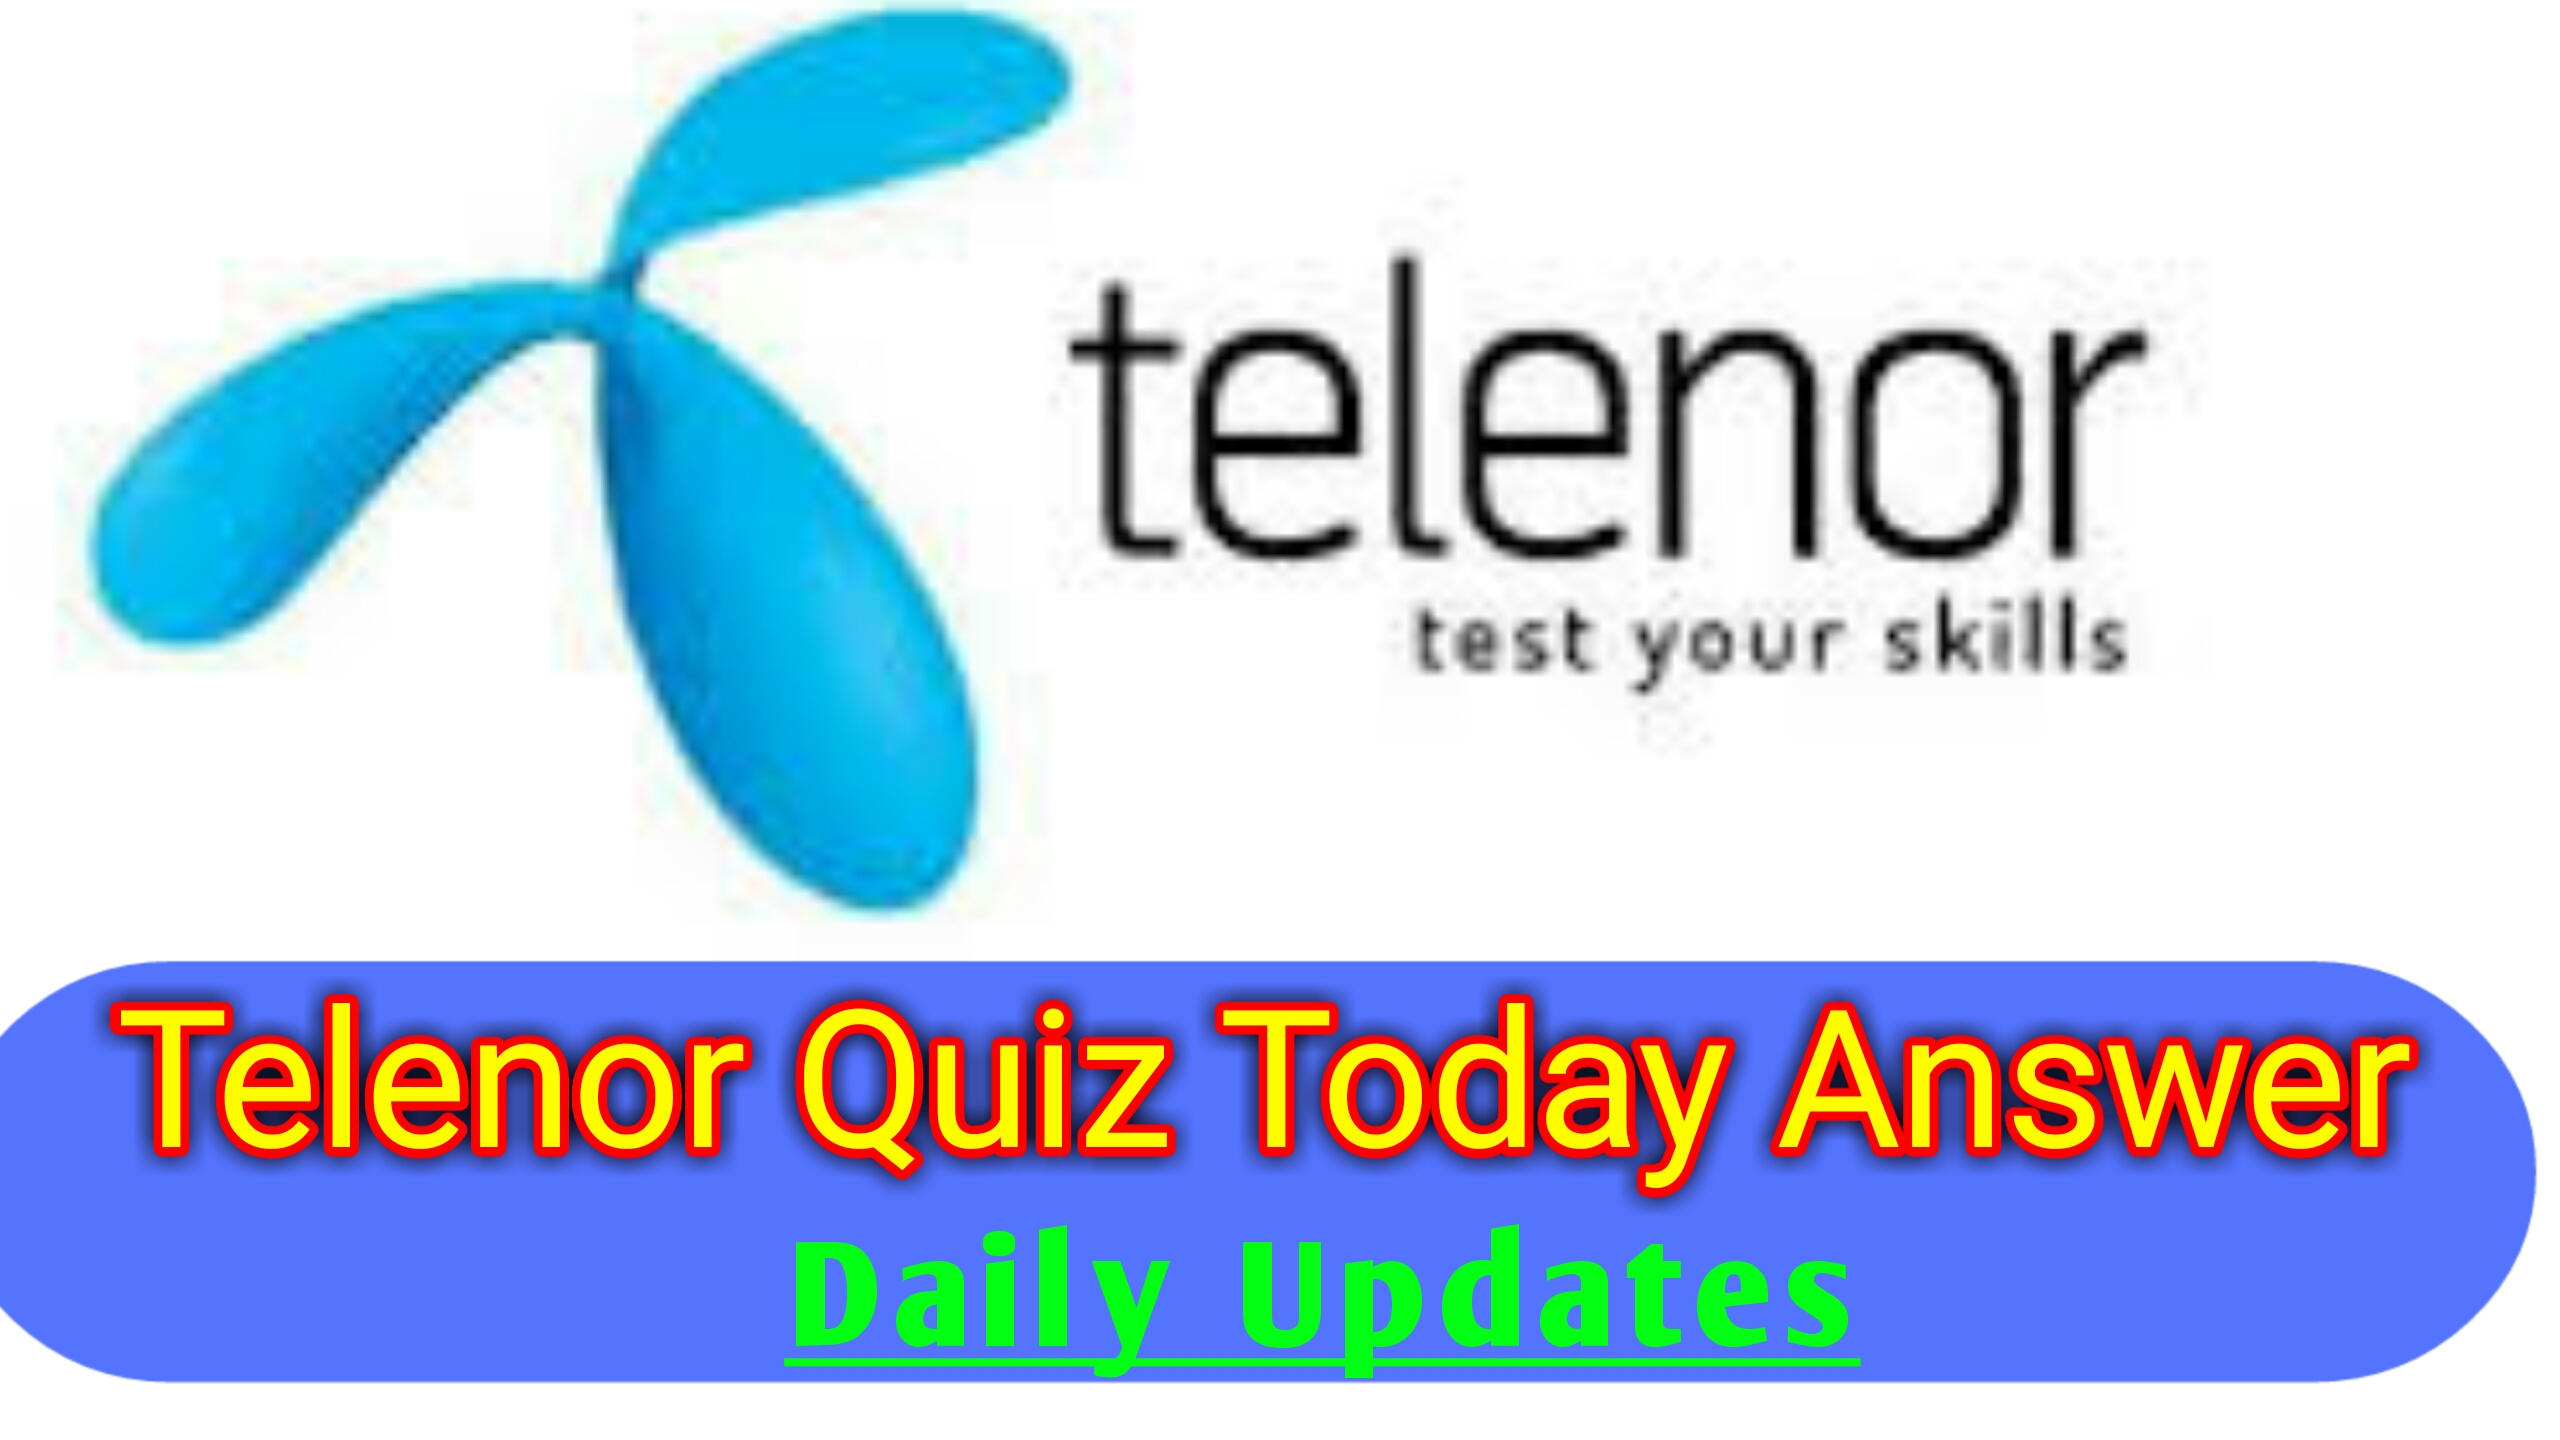 Telenor quiz today